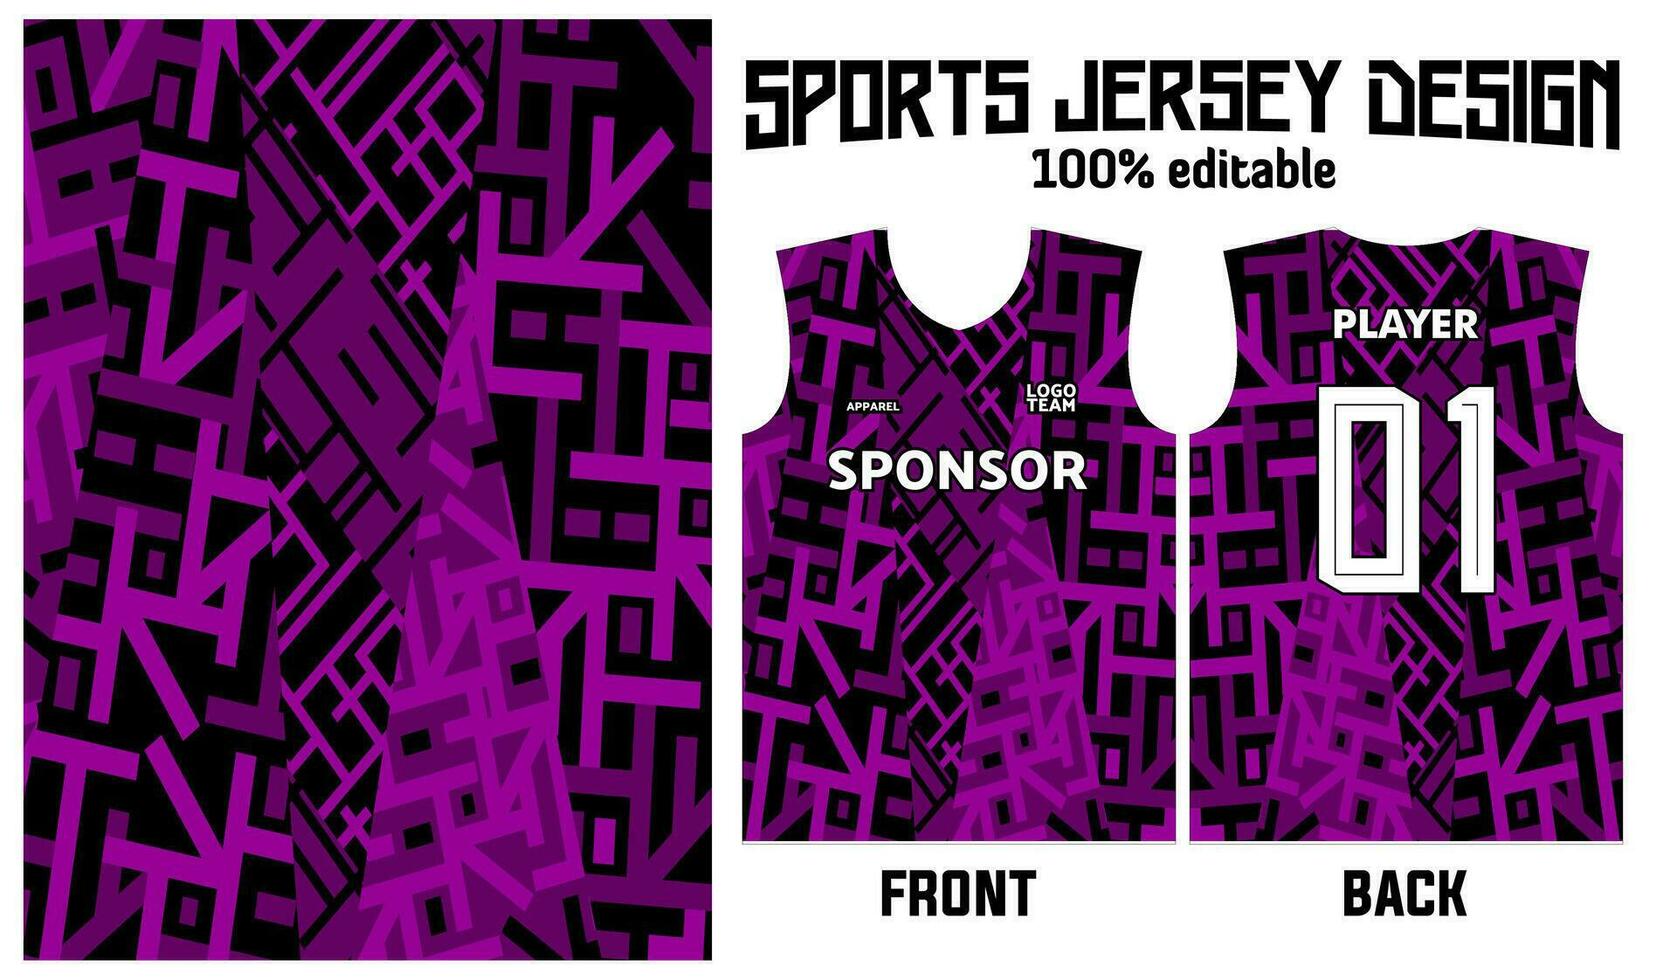 Purper achtergrond Jersey ontwerp voor sport uniform vector